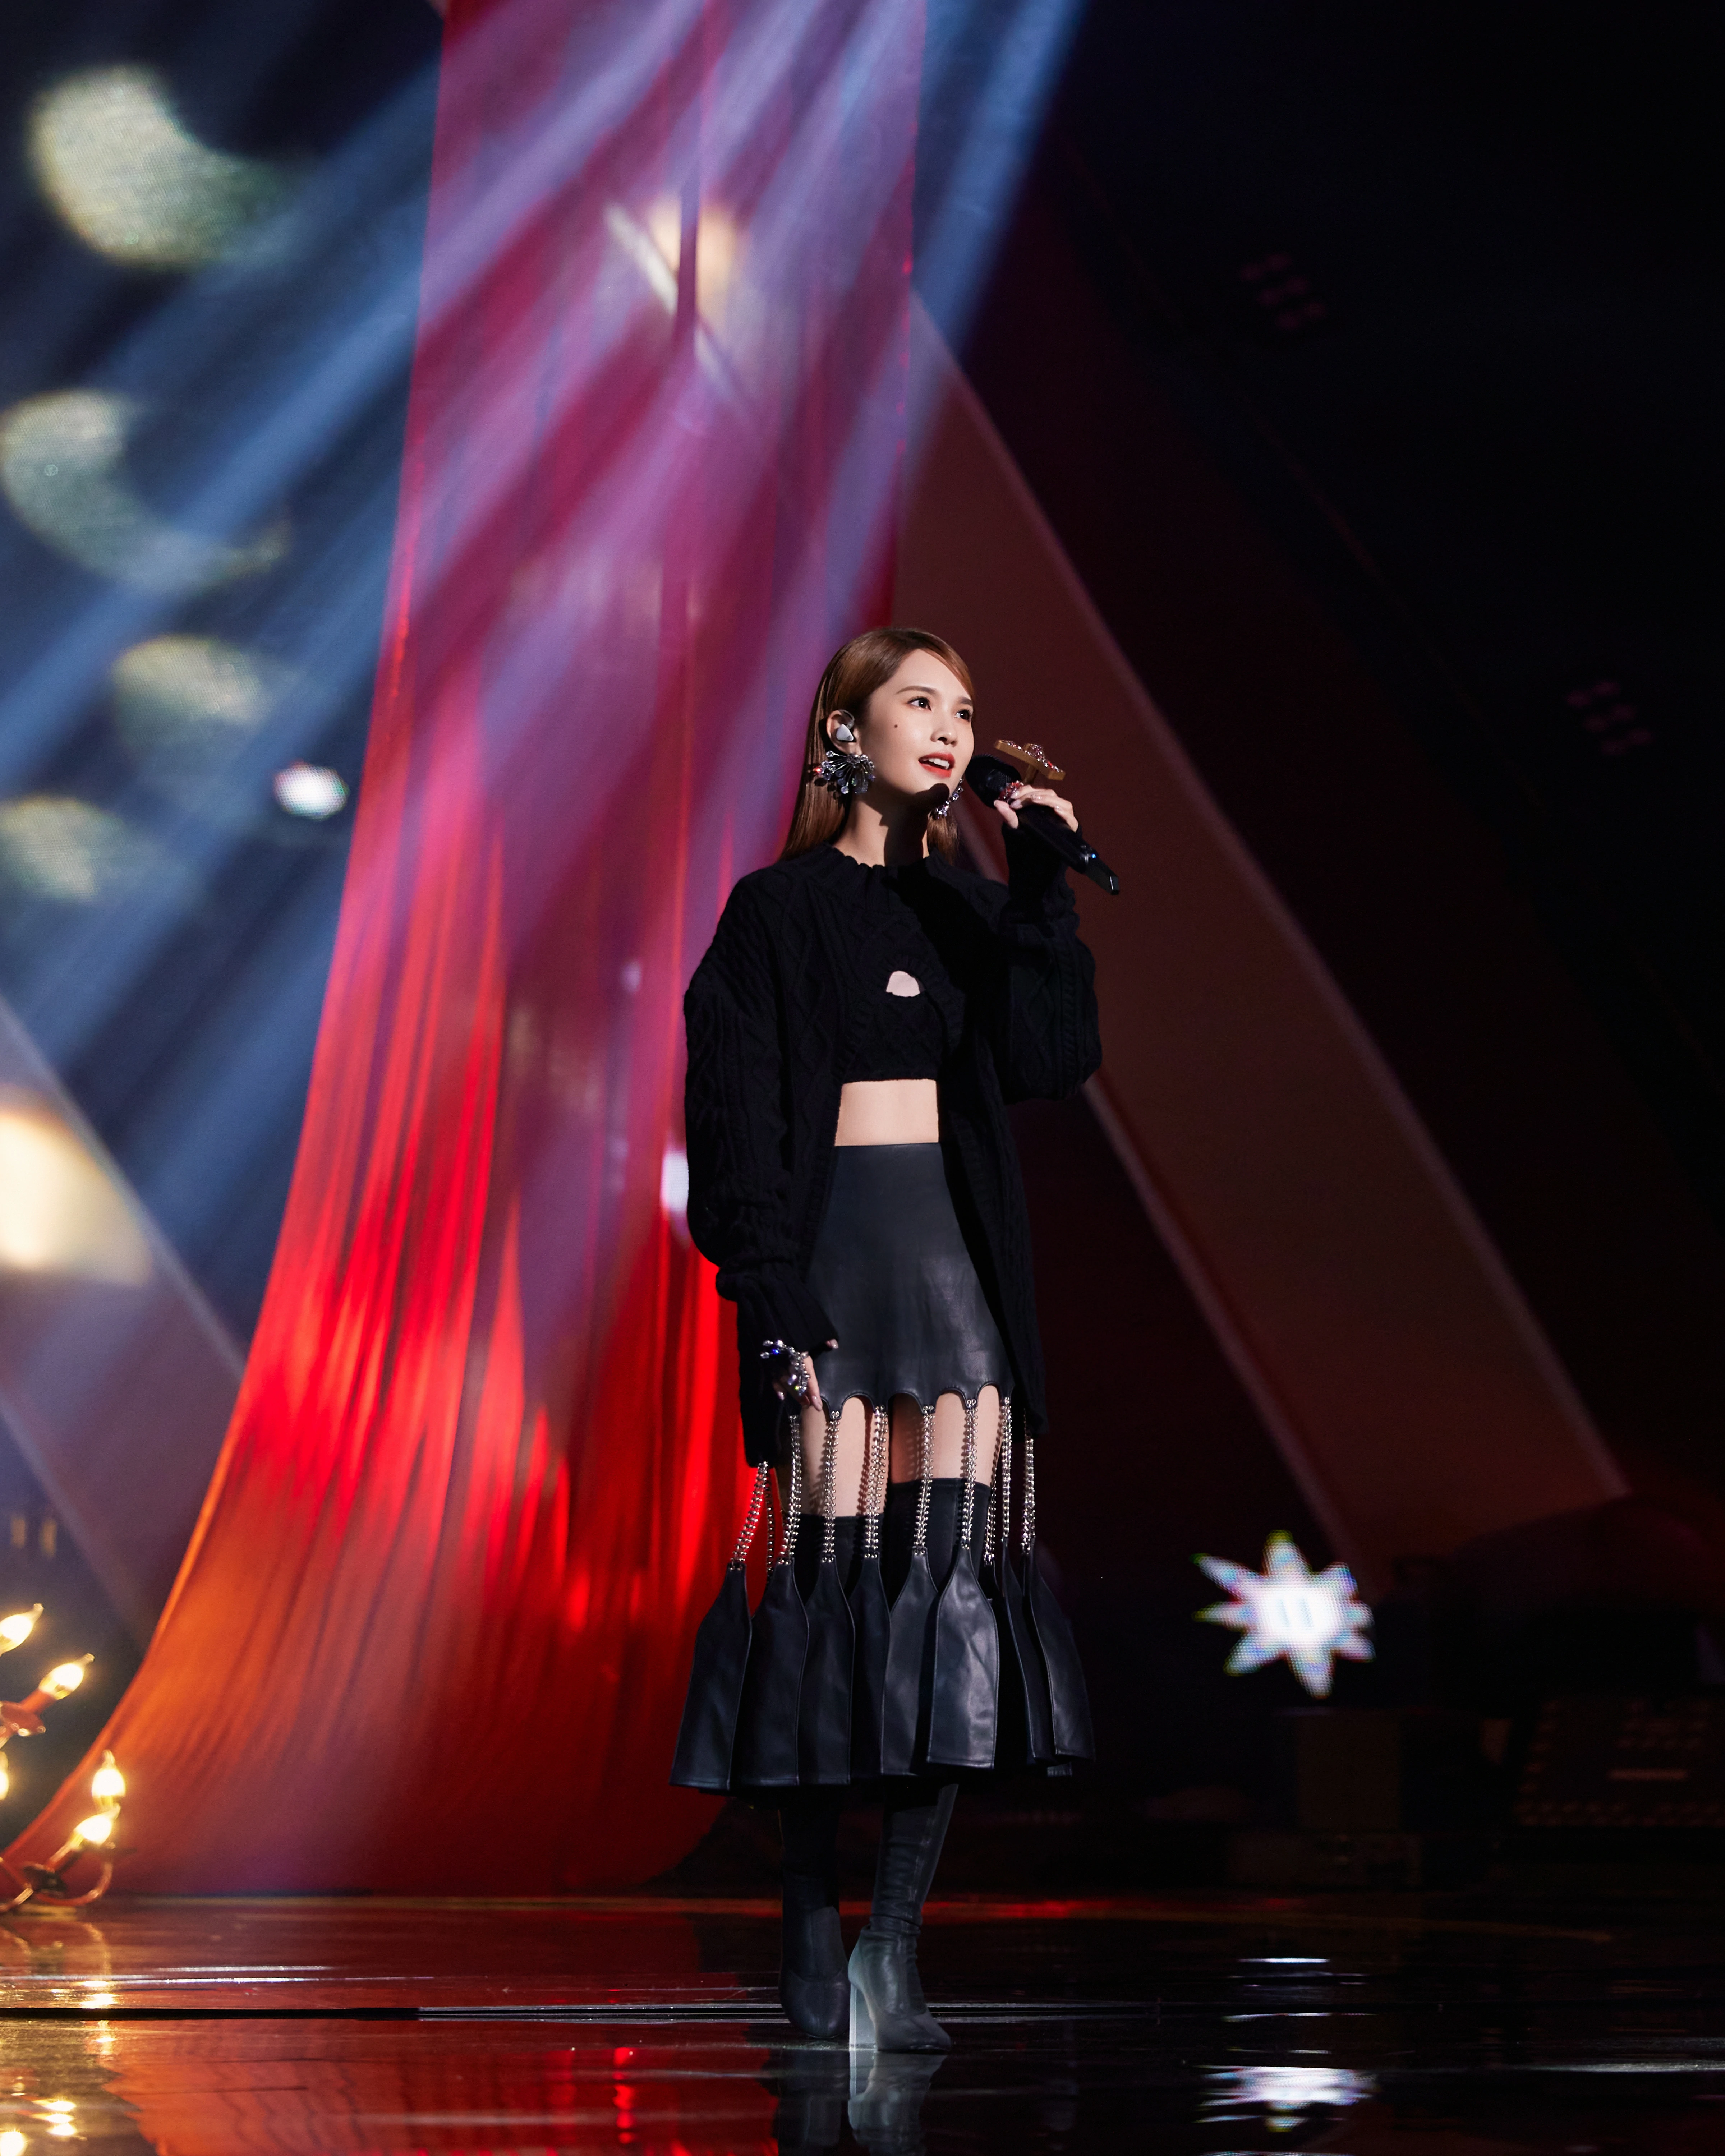 杨丞琳发布《我们的歌》舞台照 链条流苏皮裙造型秀小蛮腰,14